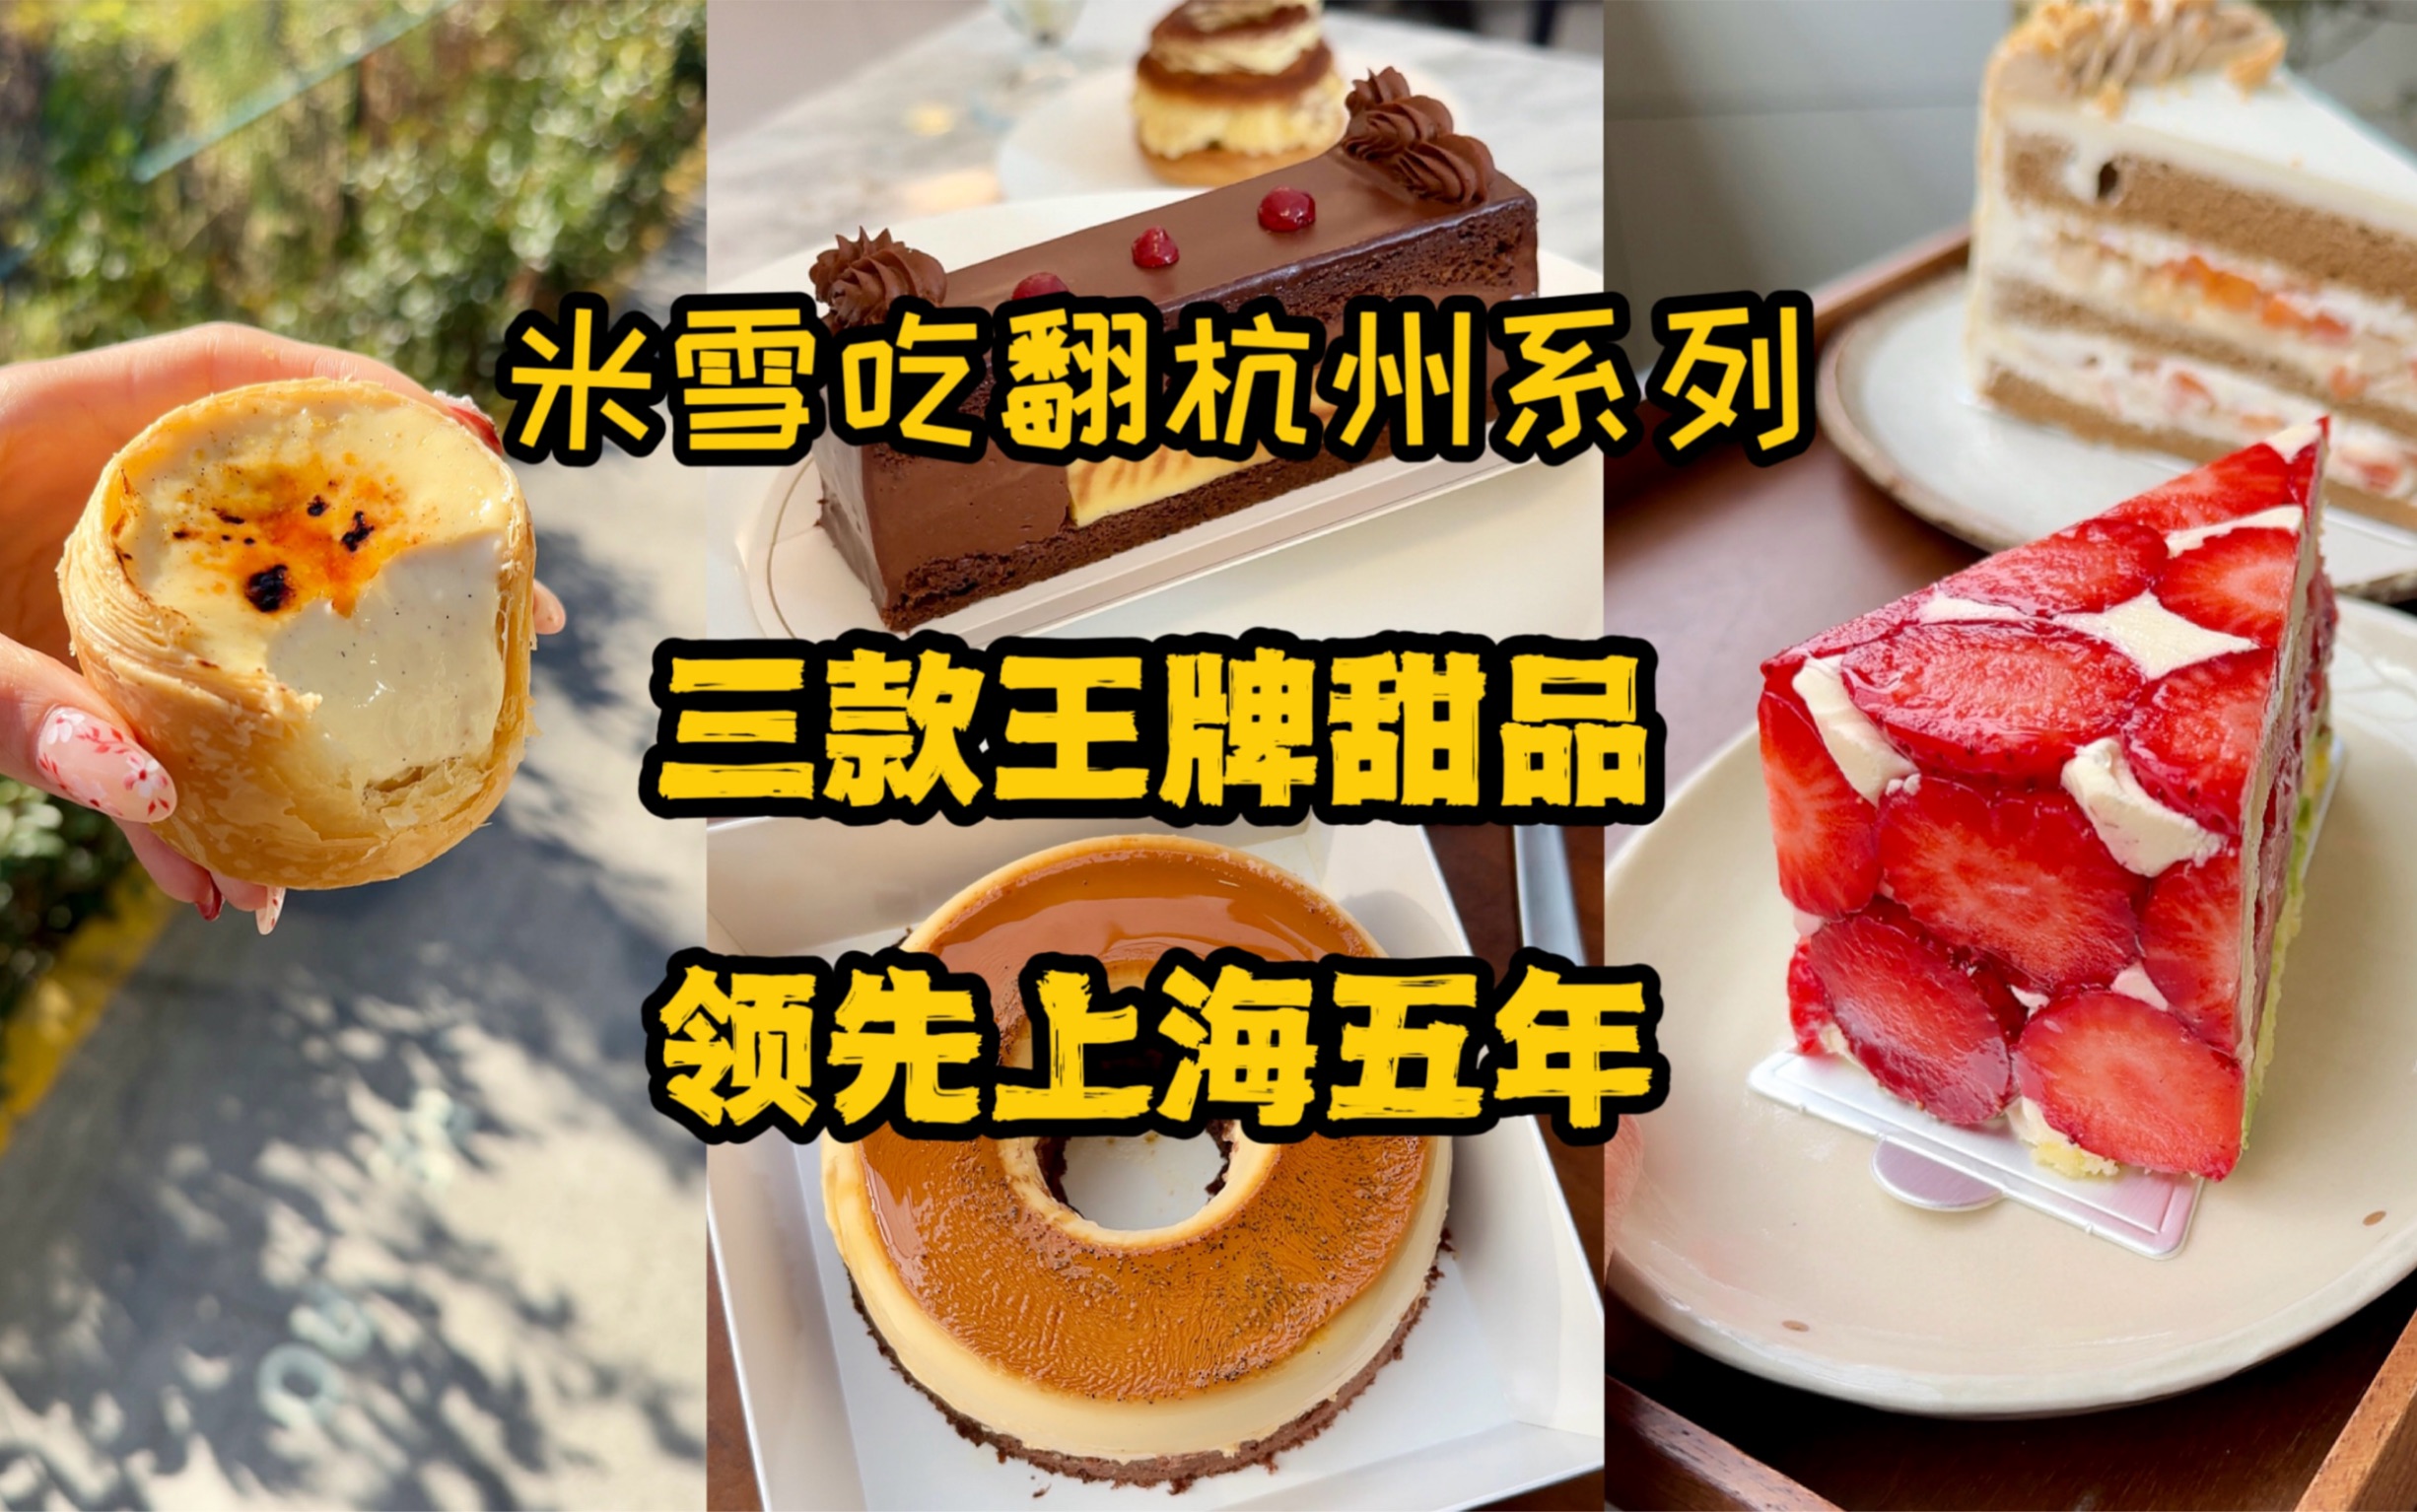 米雪说杭州甜品领先上海五年，听说有人不服，那来看看第二弹！焦糖布丁蛋糕，法式草莓，脆柿栗子，米布丁千层酥……杭州真是甜品宝库，挖都挖不完。